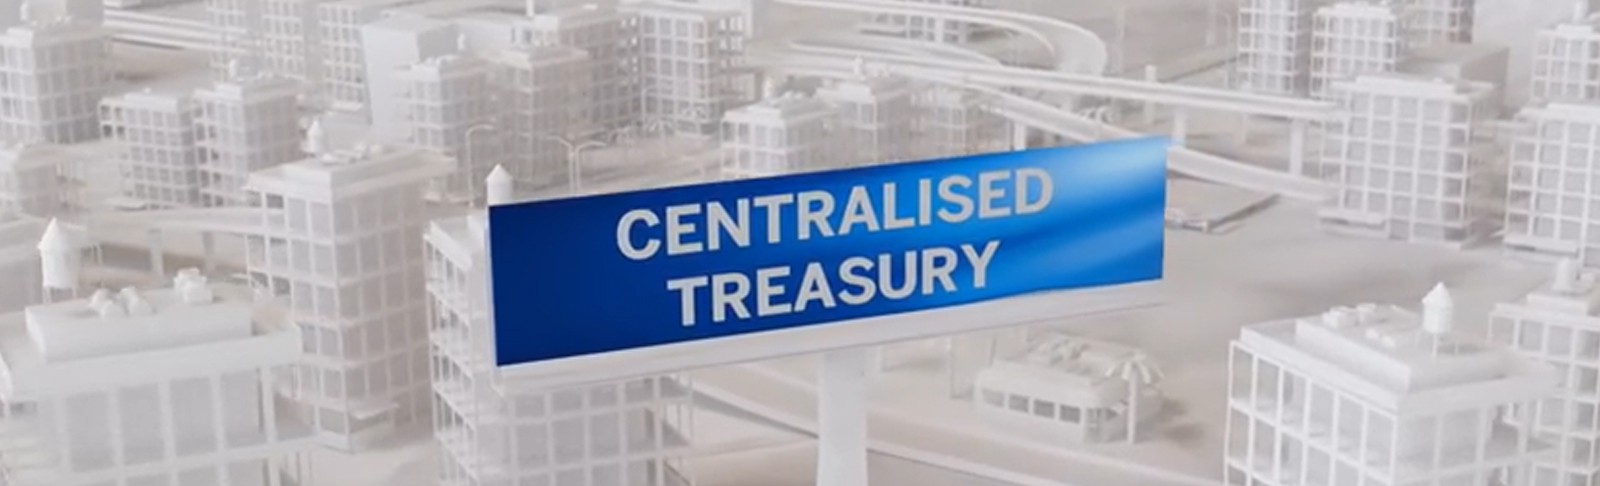 Centralised treasury